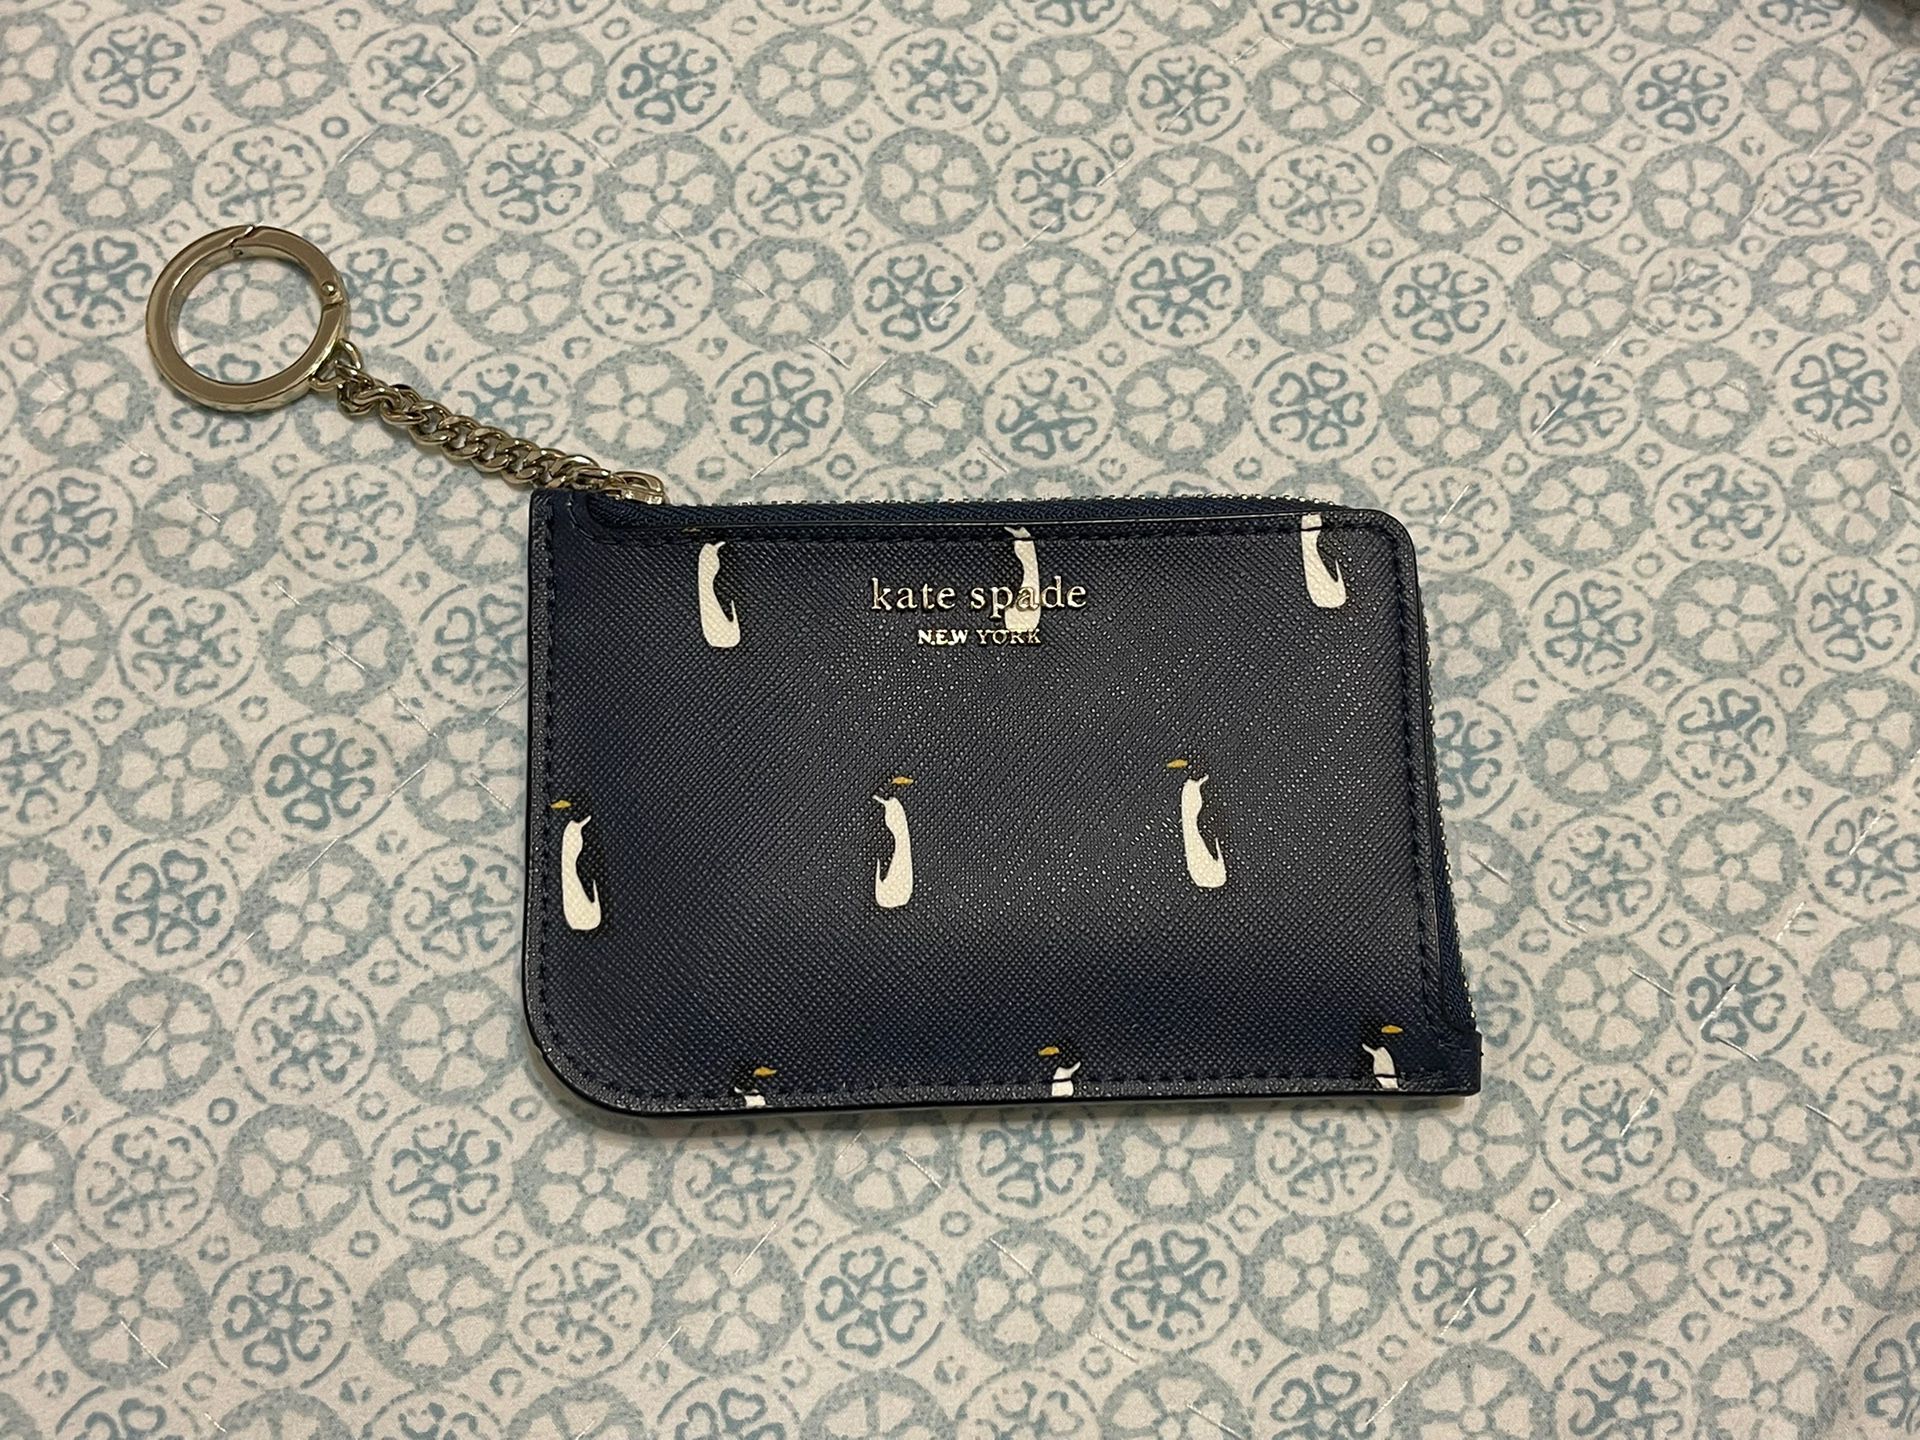 Kate Spade Penguin Key Wallet for Sale in Alton, TX - OfferUp